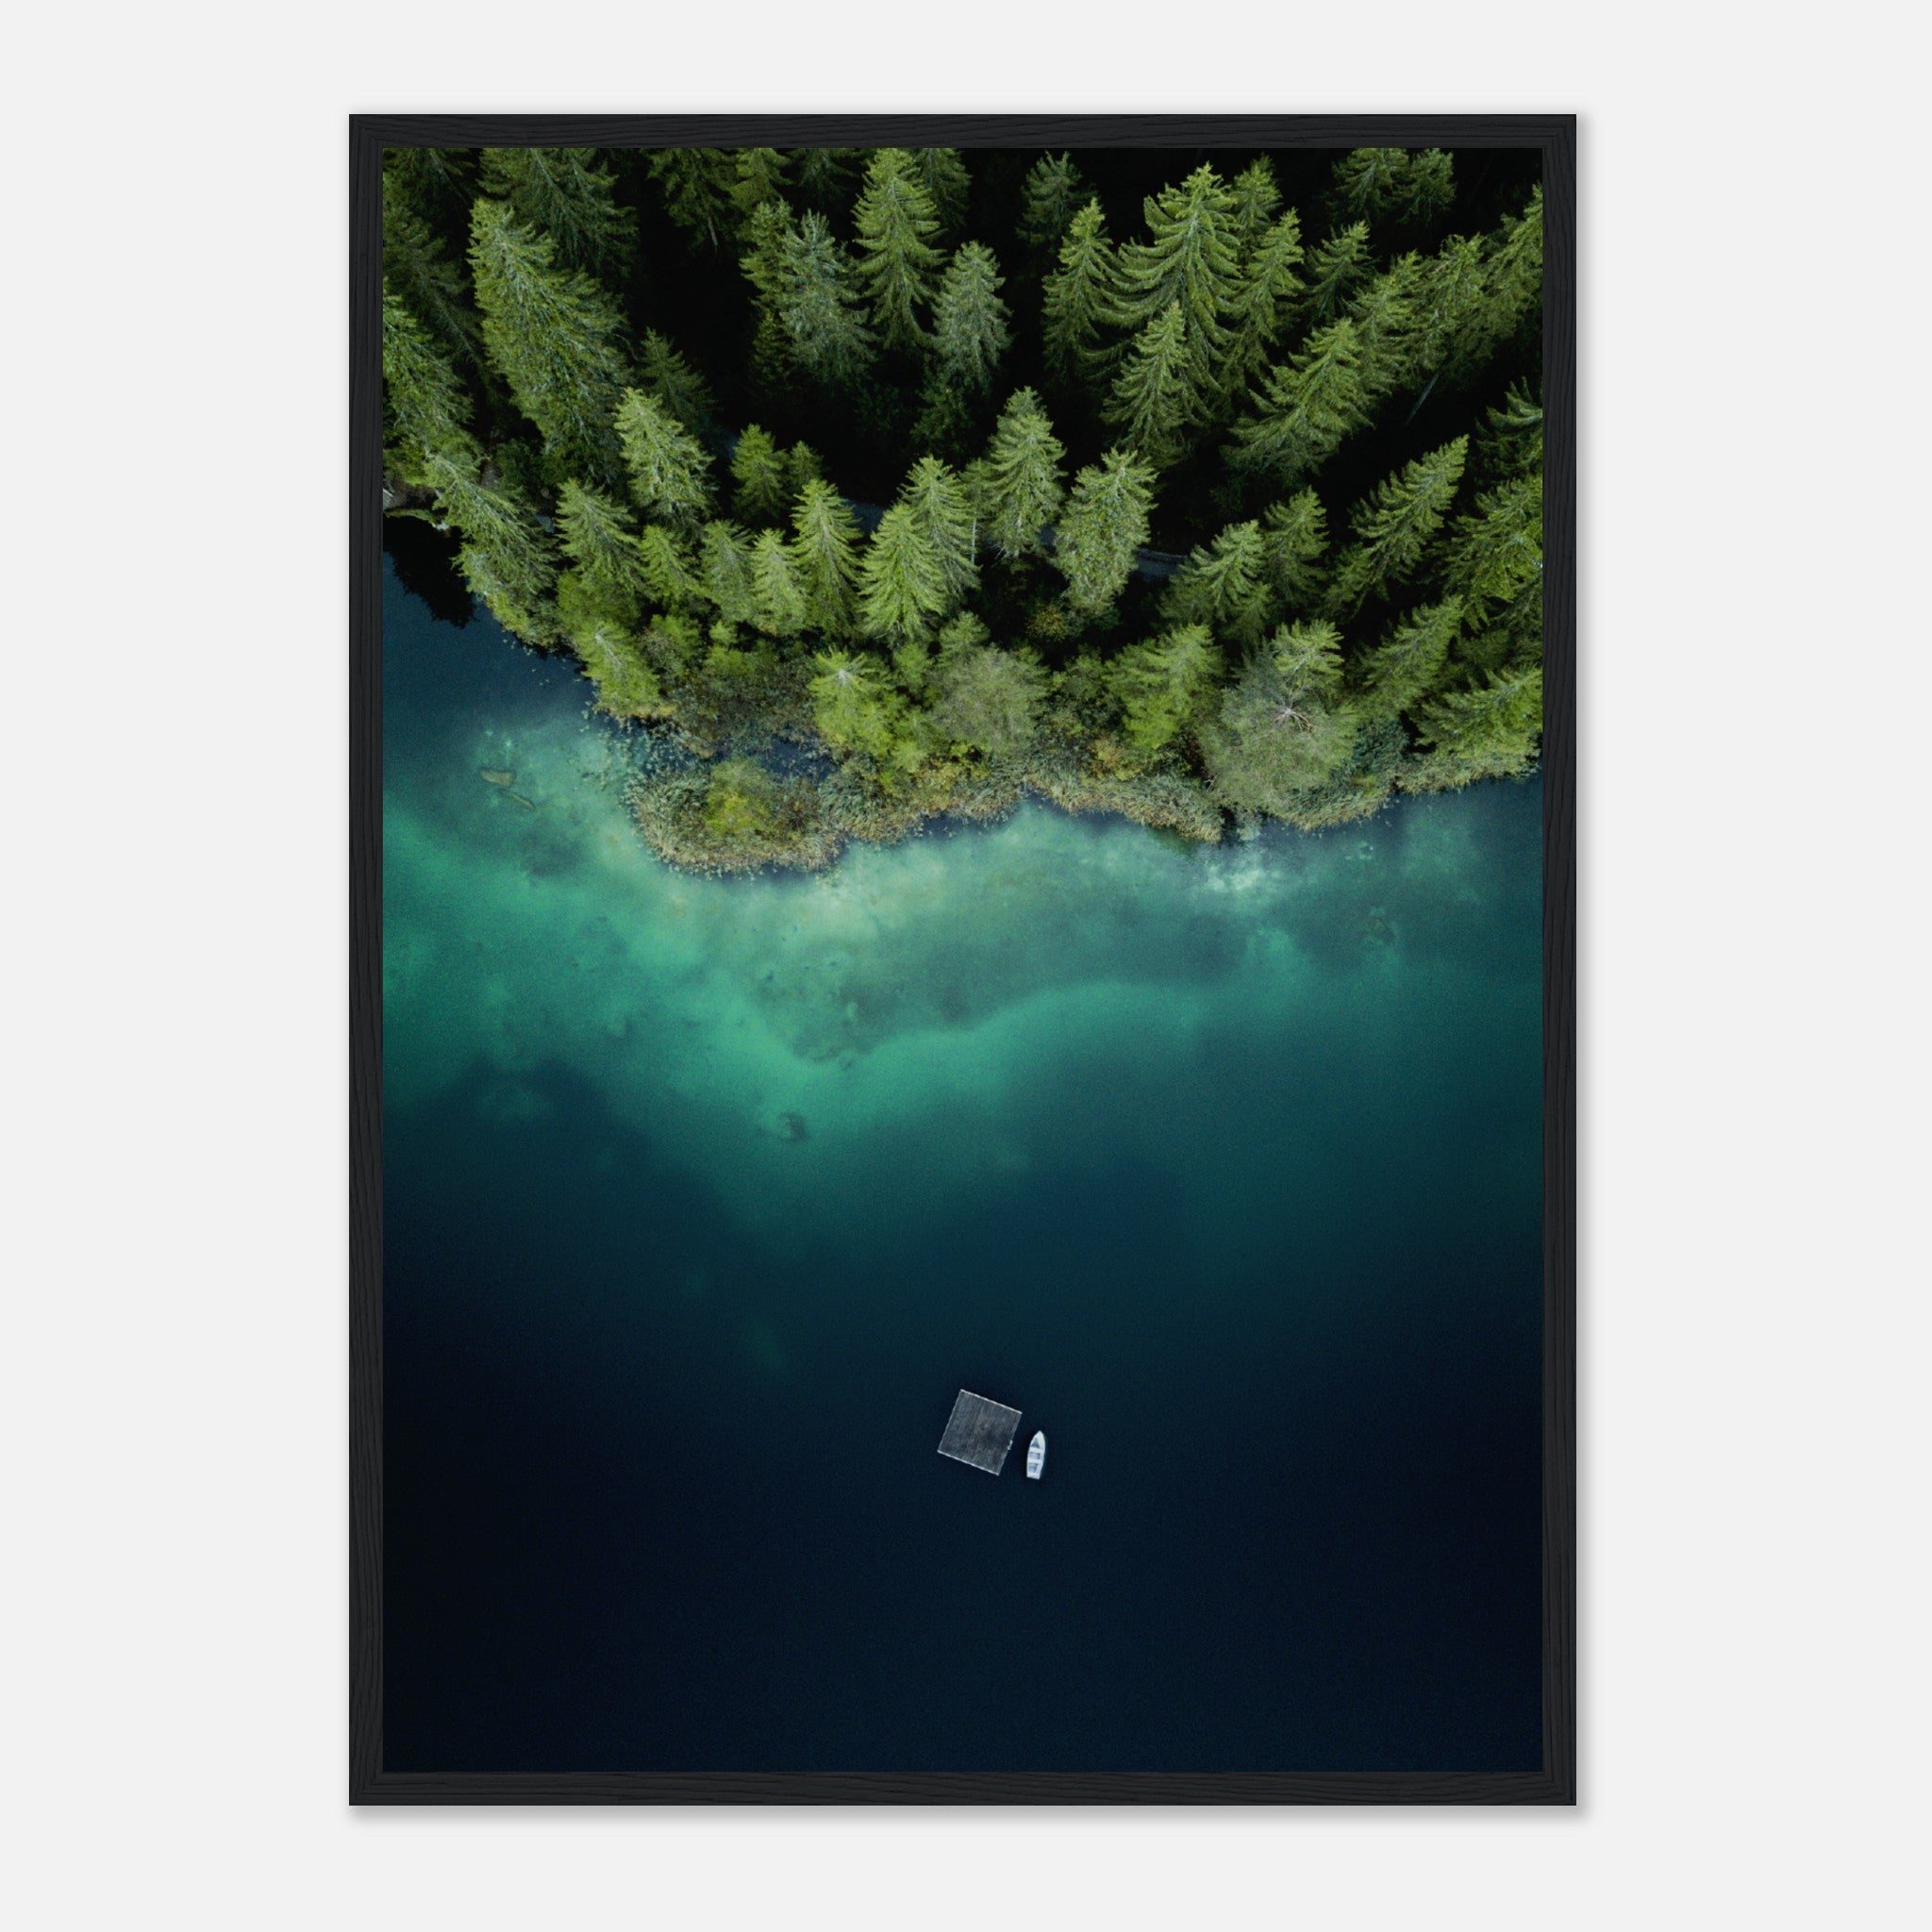 Barco en un lago azul profundo junto al bosque Póster